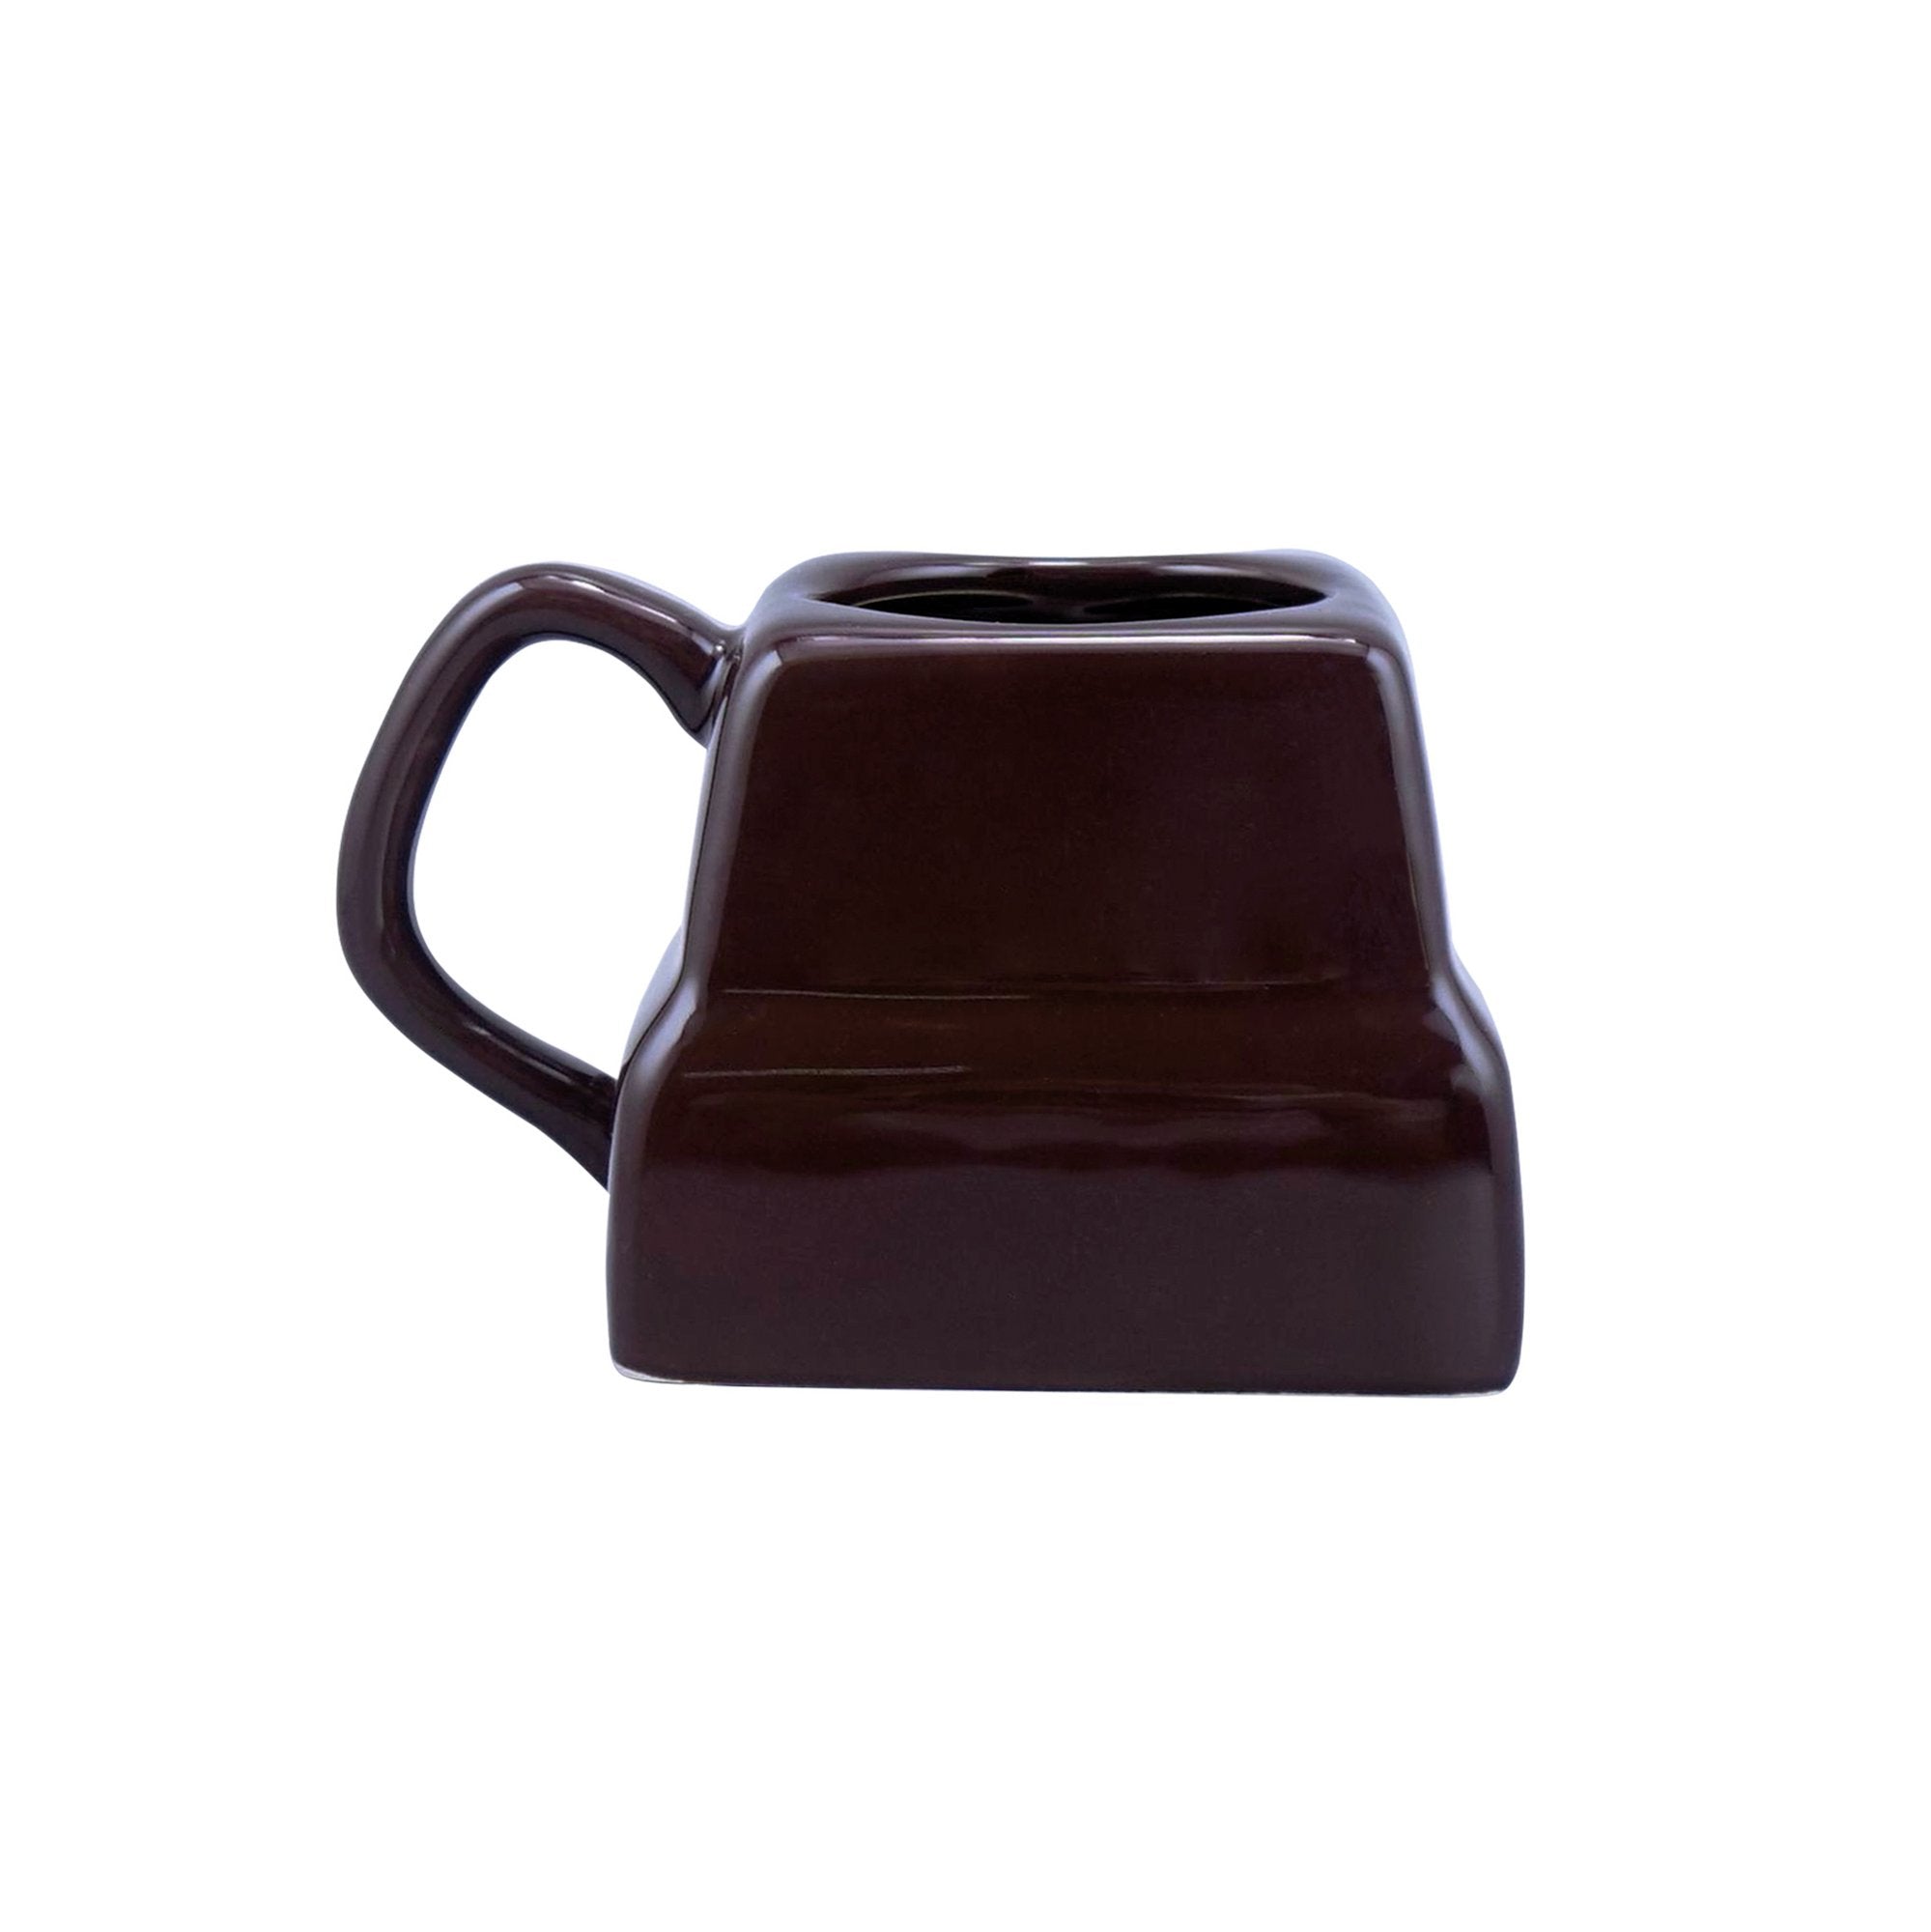 Mug Shaped Unboxed (290ml) - Wonka (Chocolate)